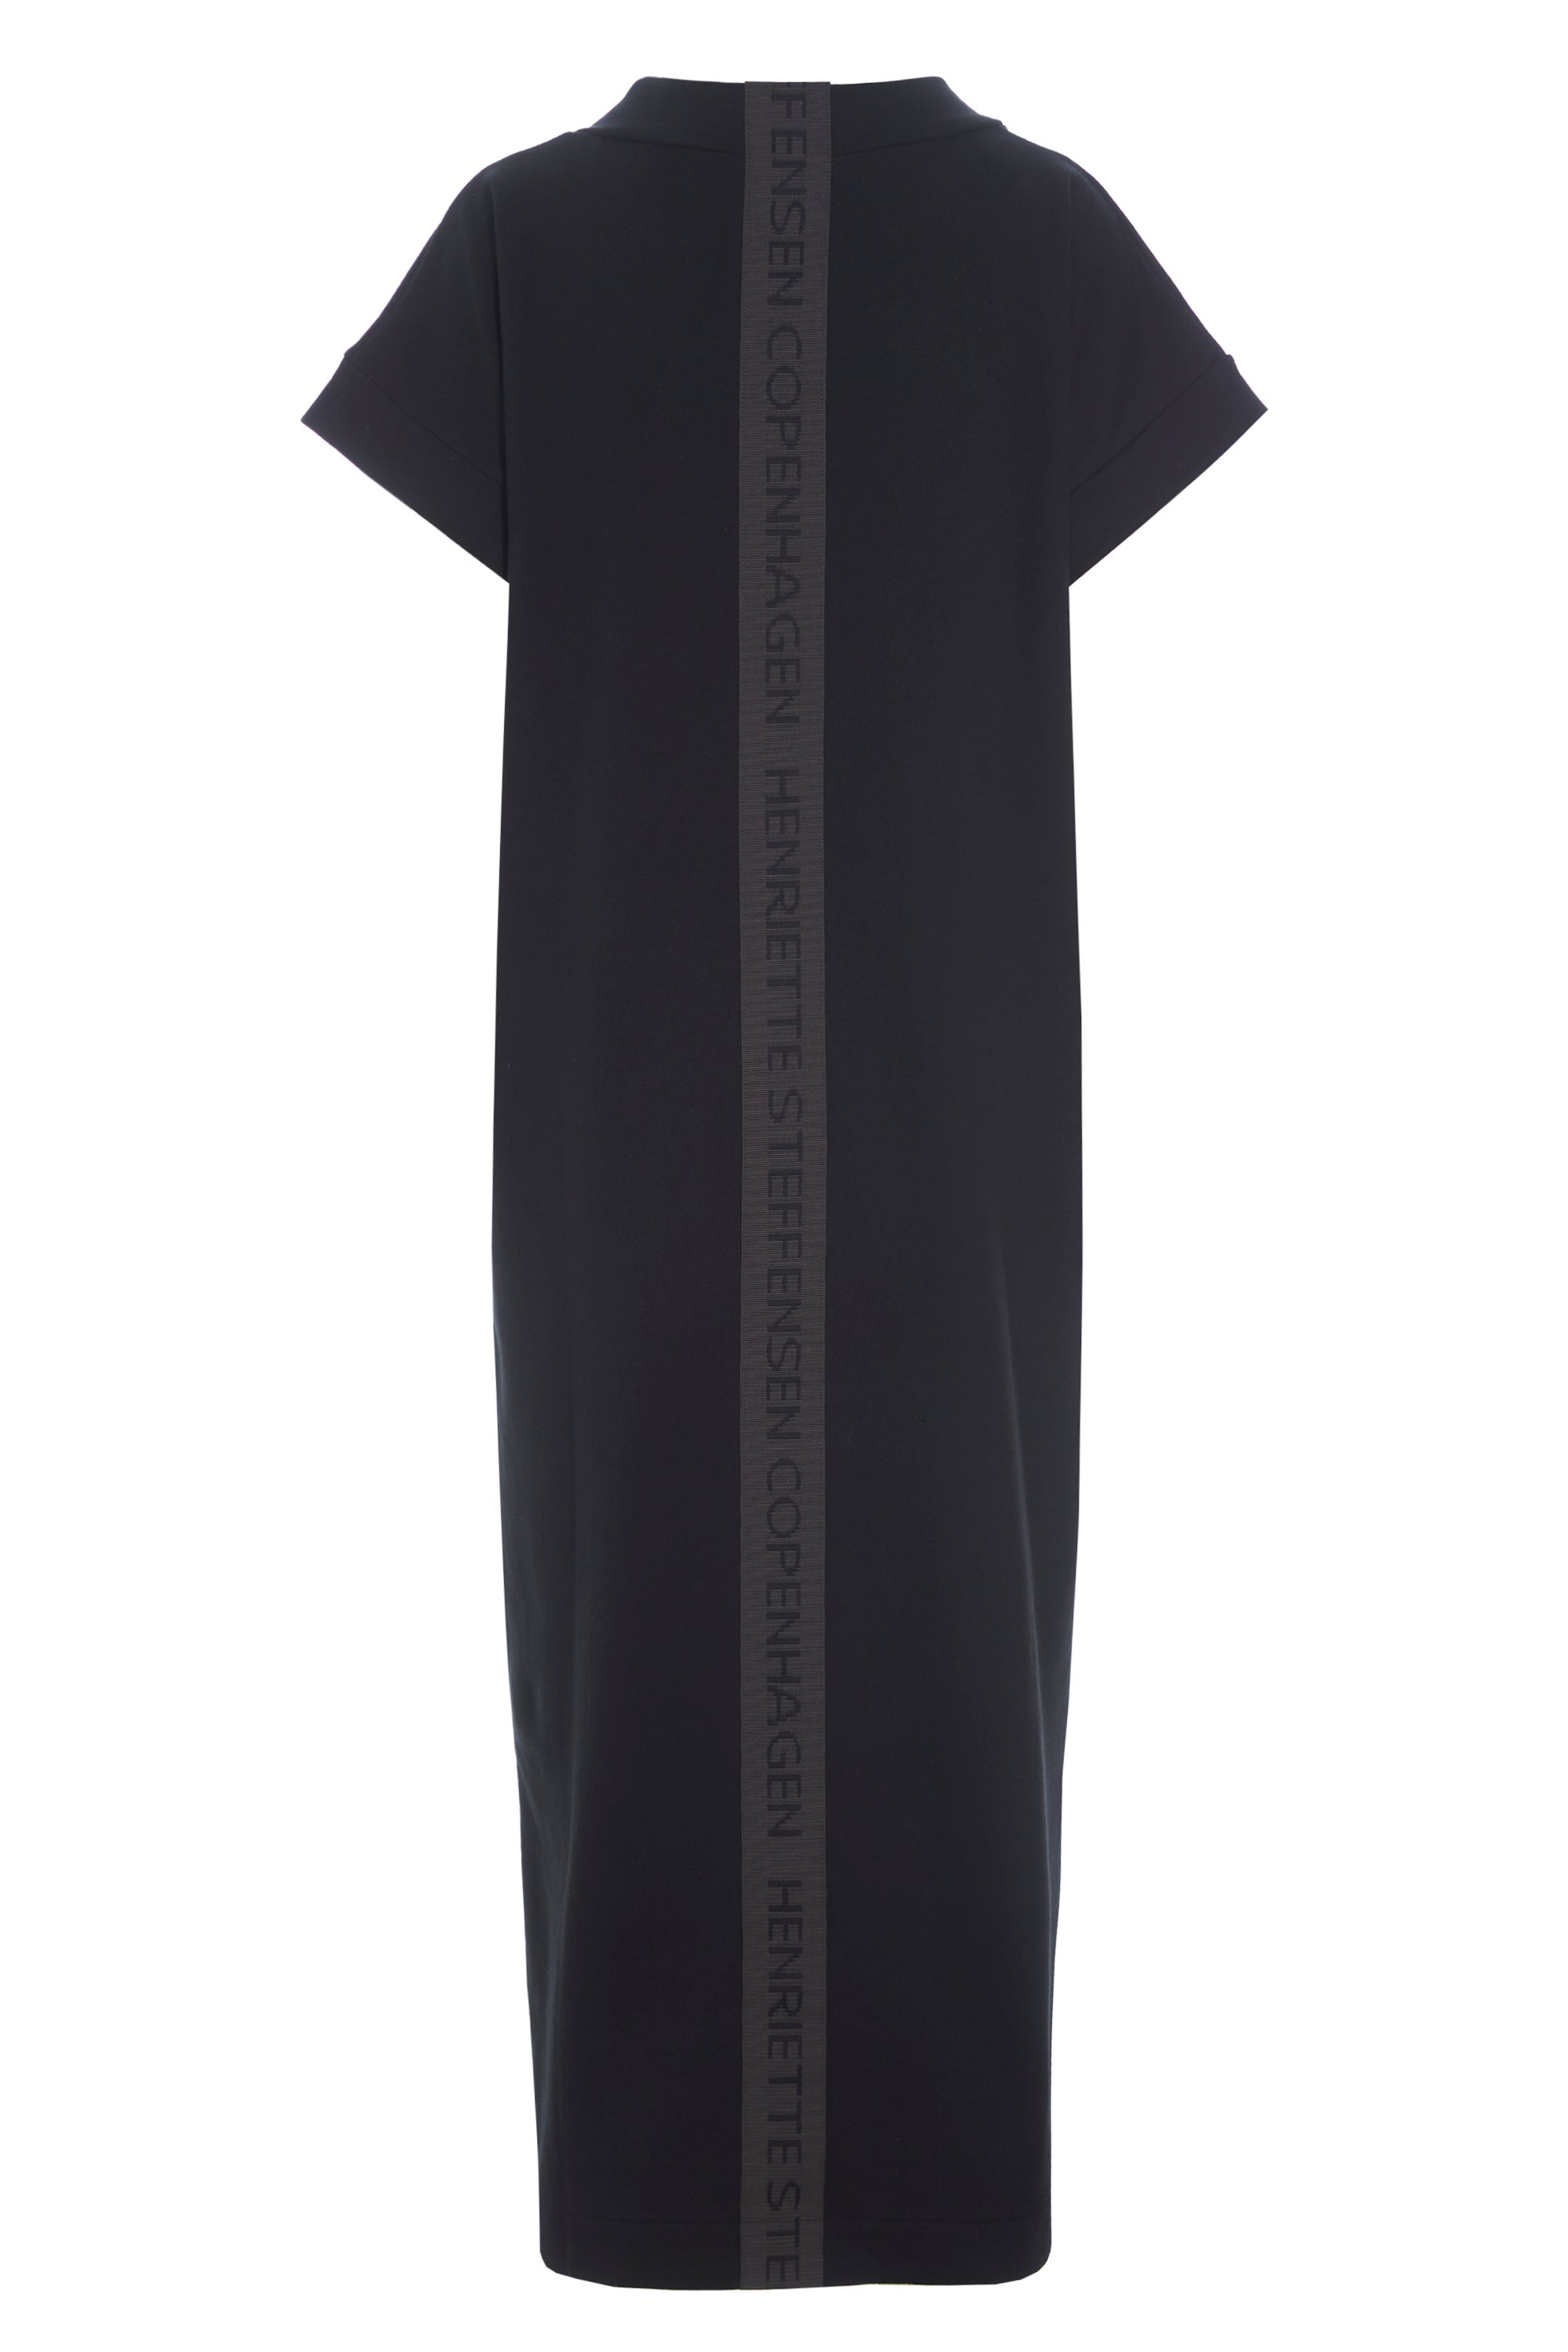 Henriette Steffensen Long Dress Black At SoS Lingerie & Boutique